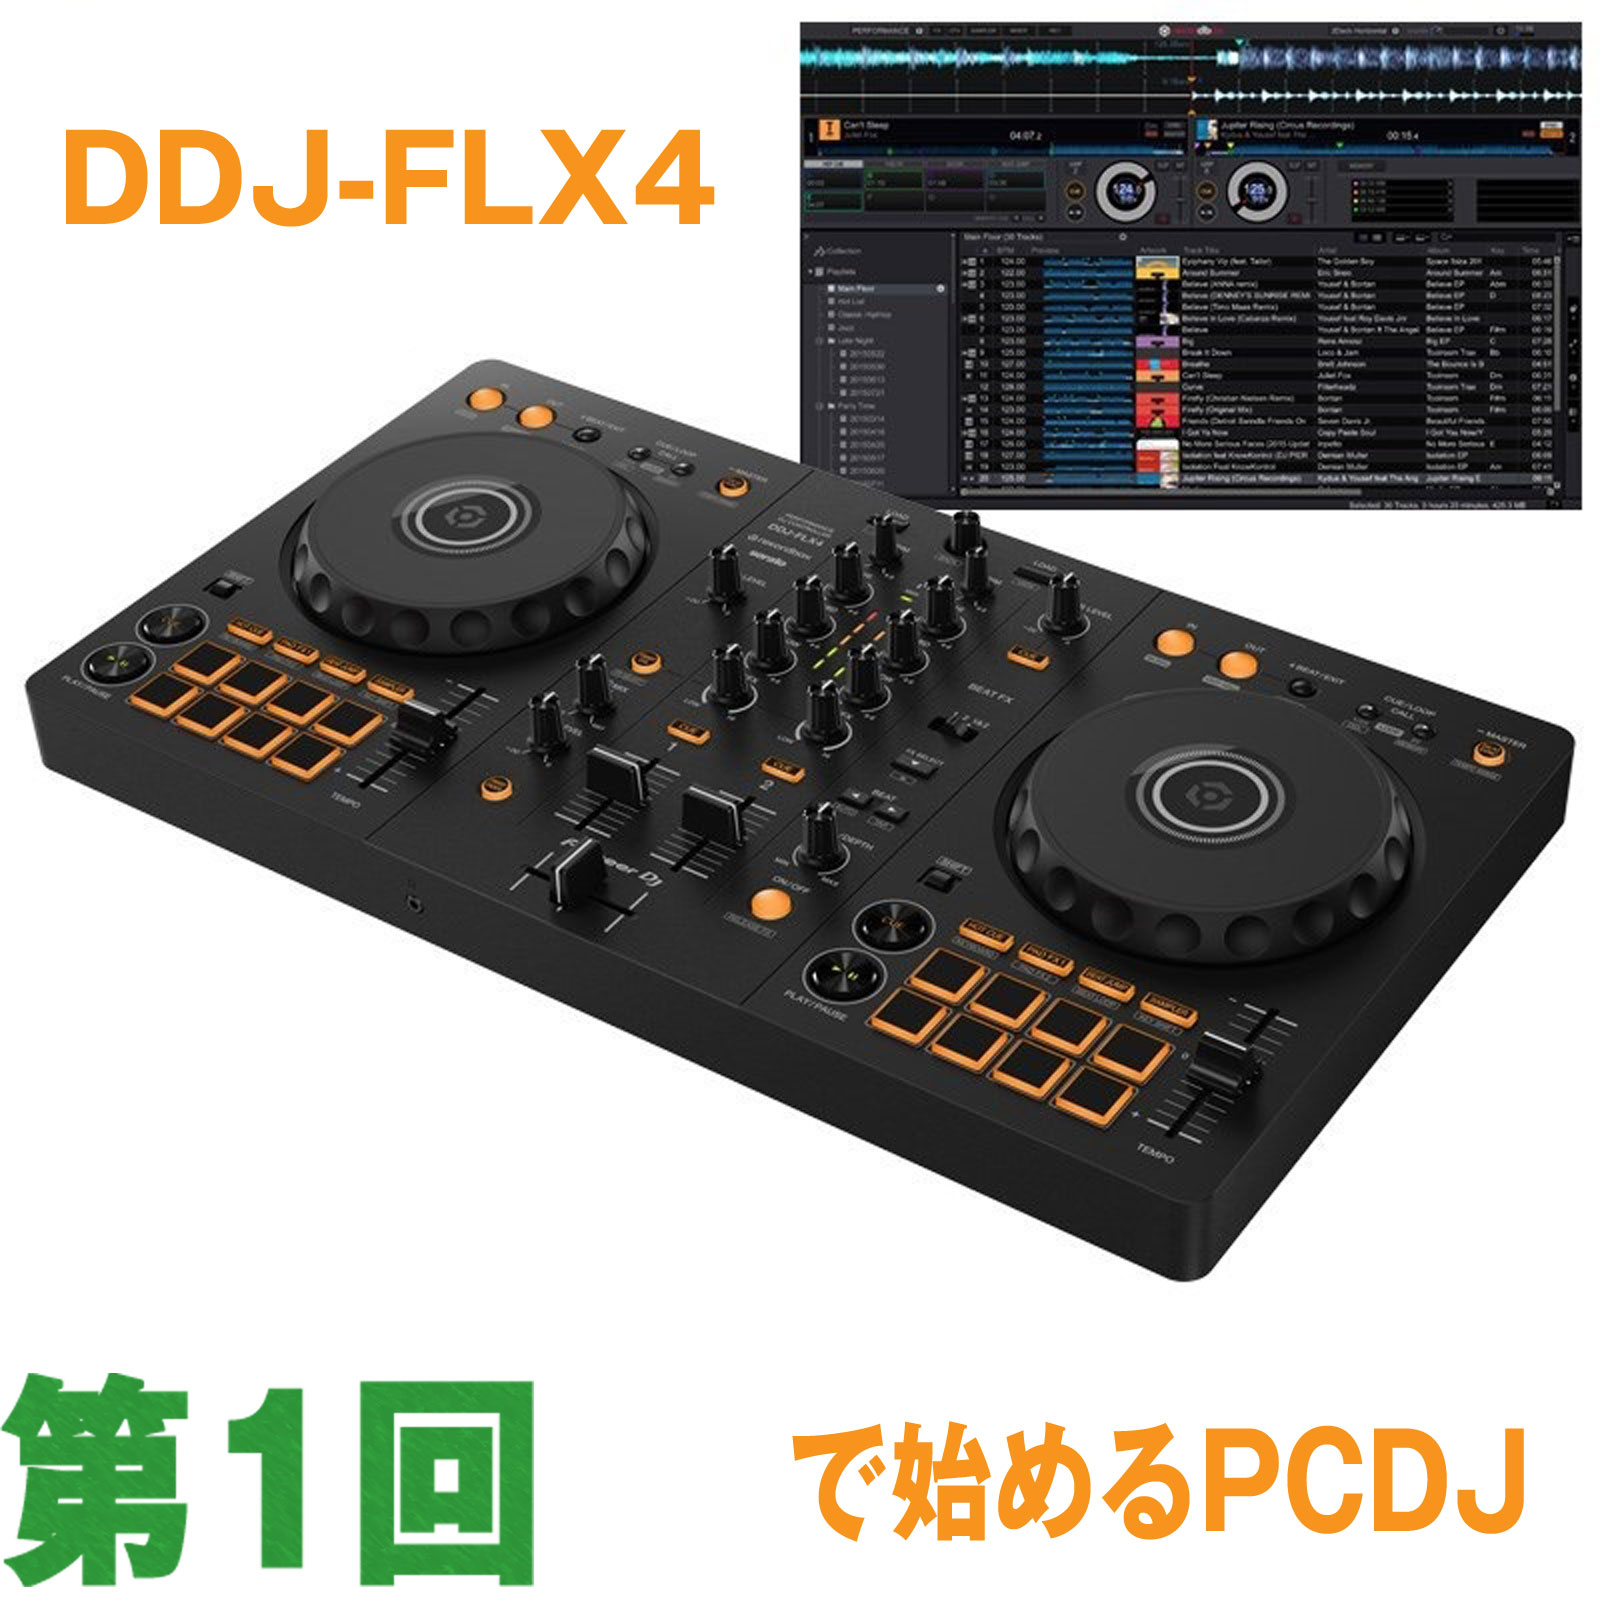 【第1回】DDJ-FLX4で始めるPCDJ【開封編】 | 池部楽器店 DJ機器 